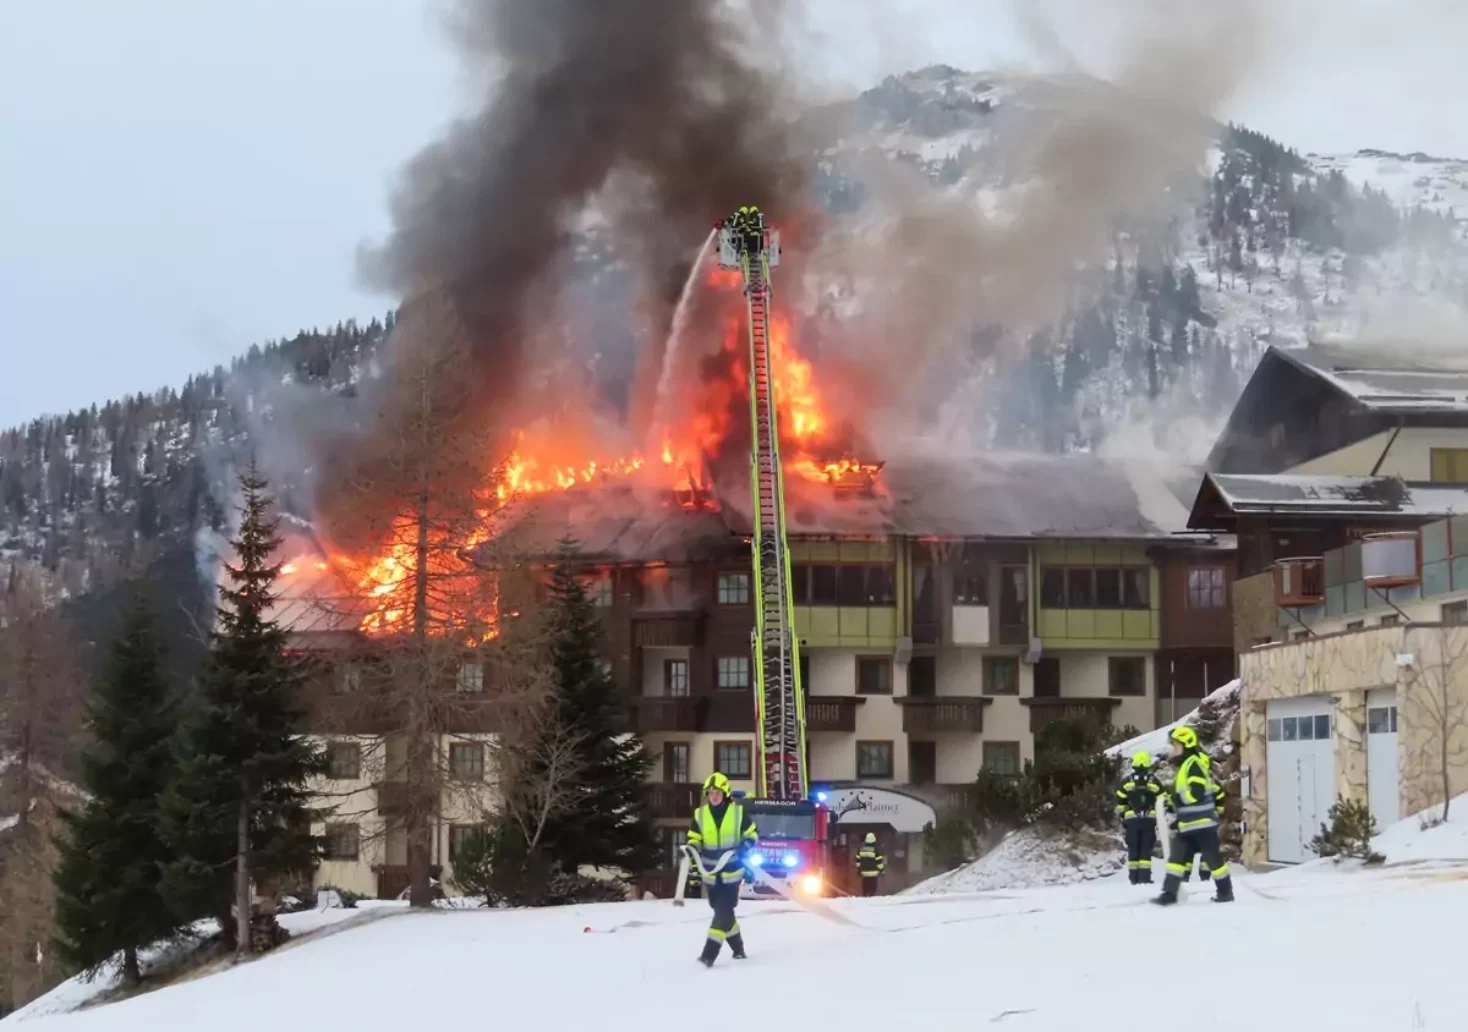 Das Bild auf 5min.at zeigt einen Hotelbrand am Nassfeld. Zahlreiche Feuerwehren stehen im Einsatz.